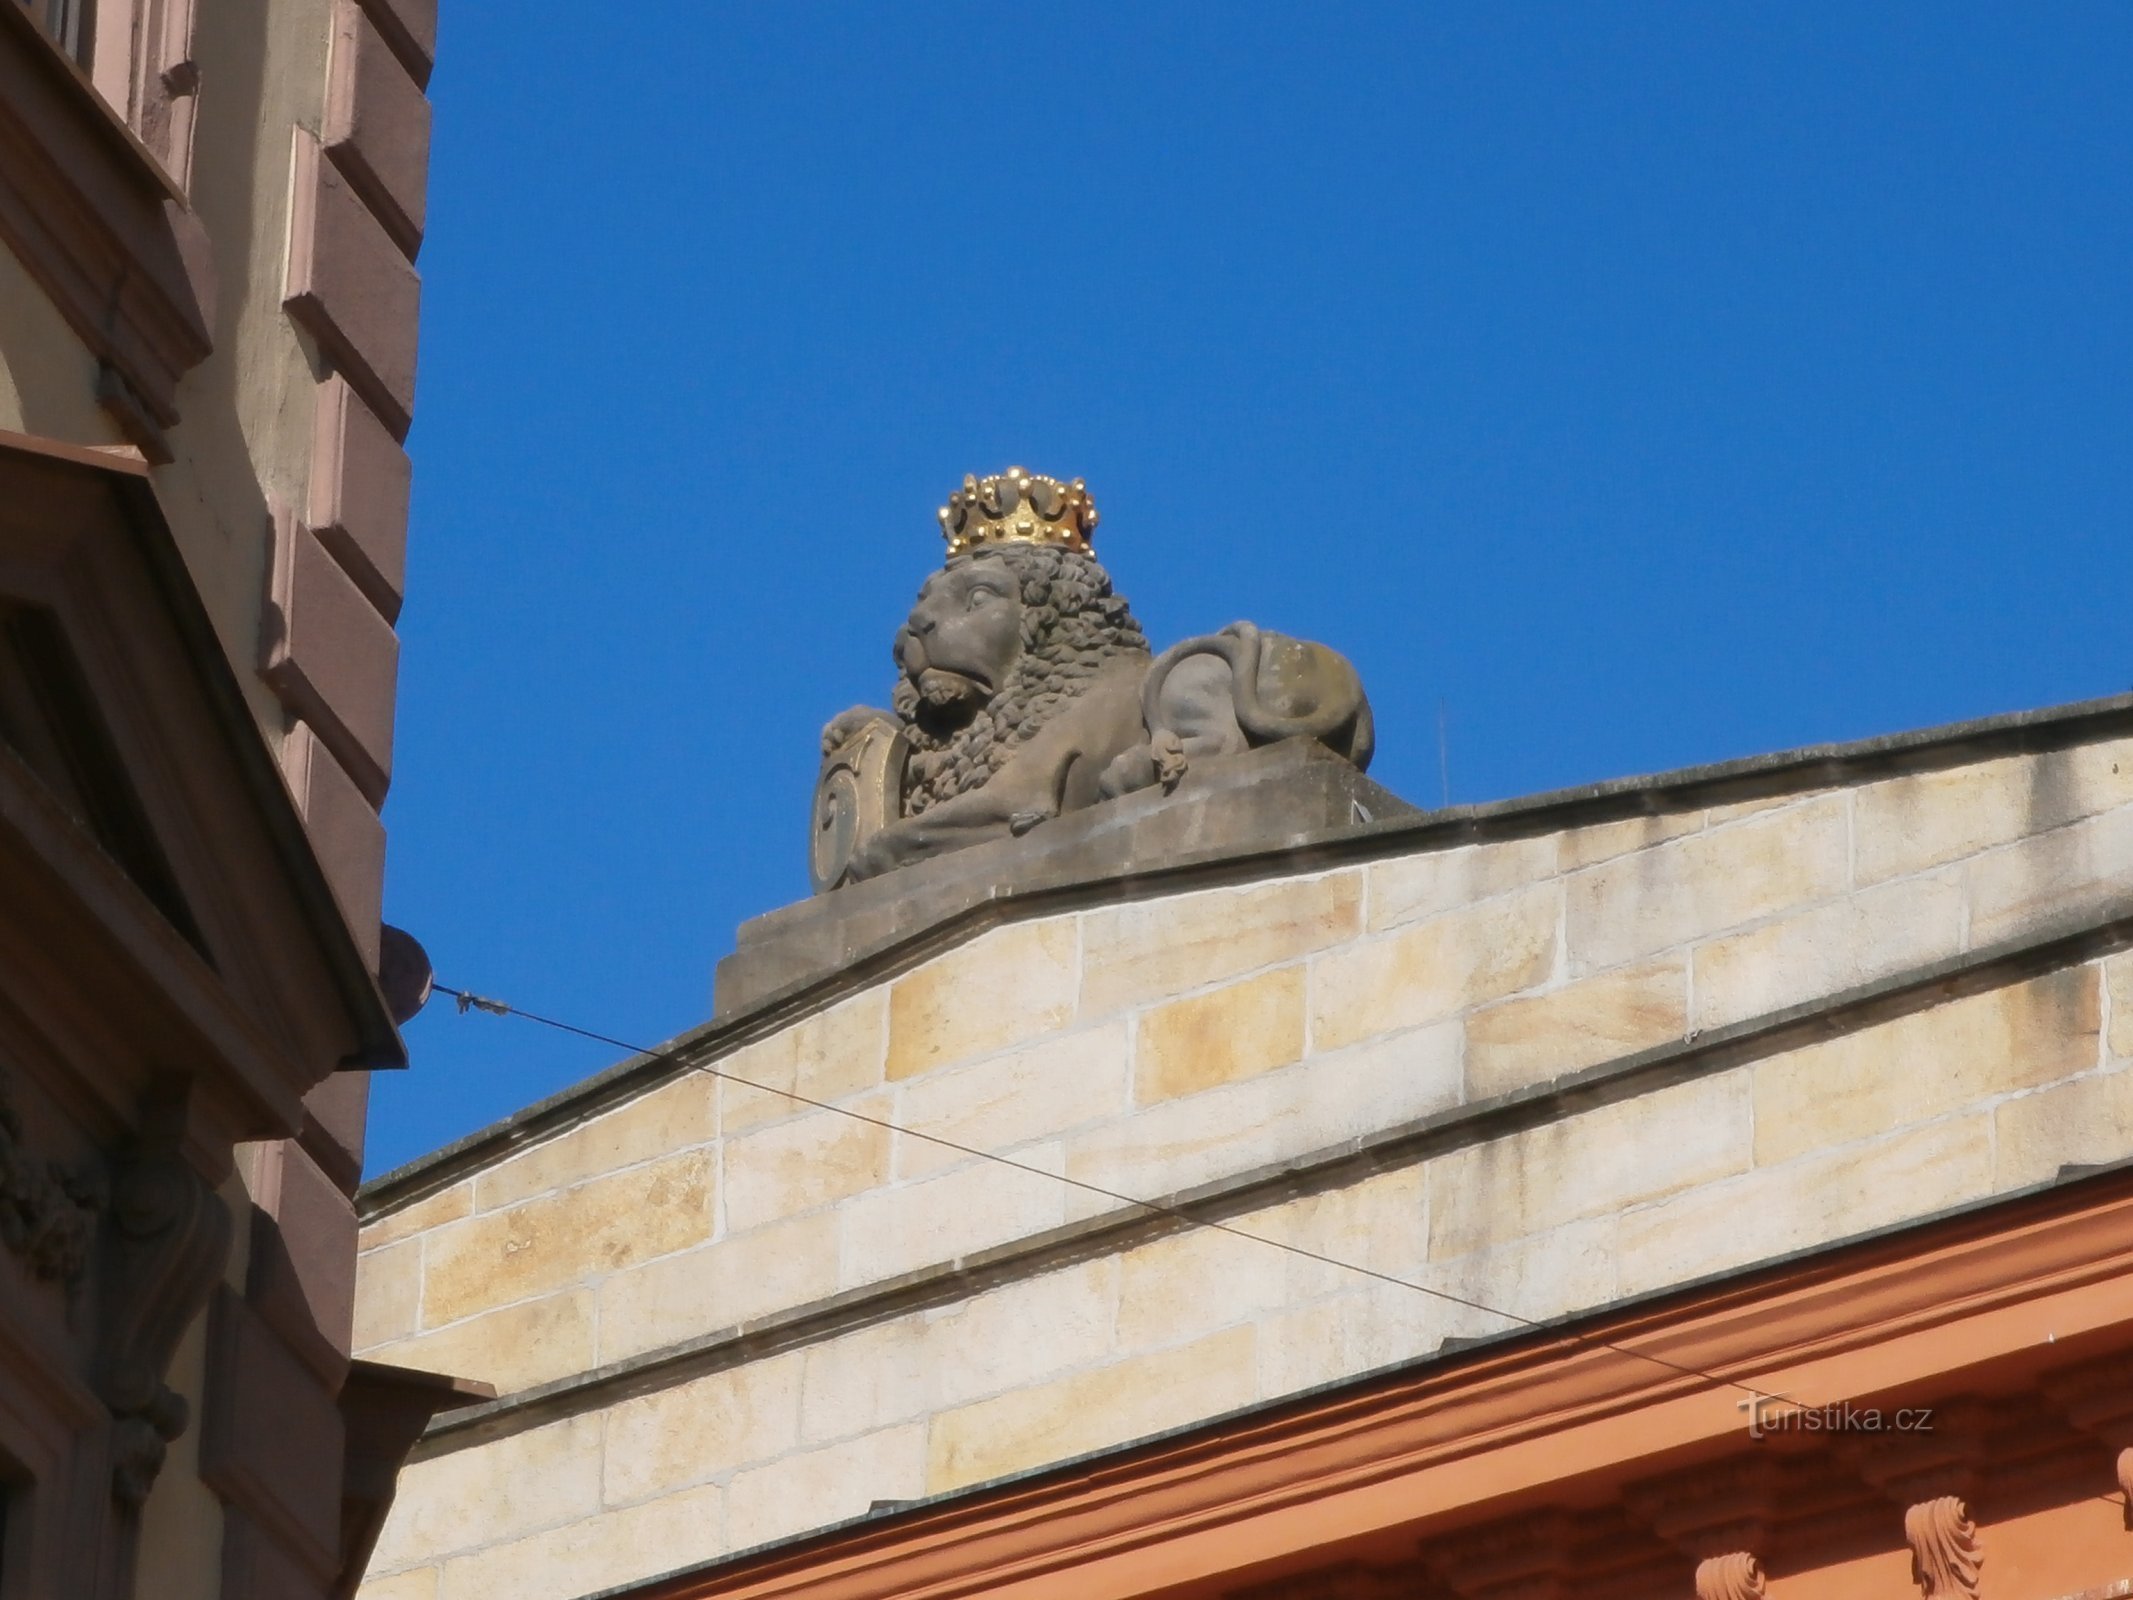 Tượng sư tử ở số 230 (Hradec Králové, 18.6.2016/XNUMX/XNUMX)